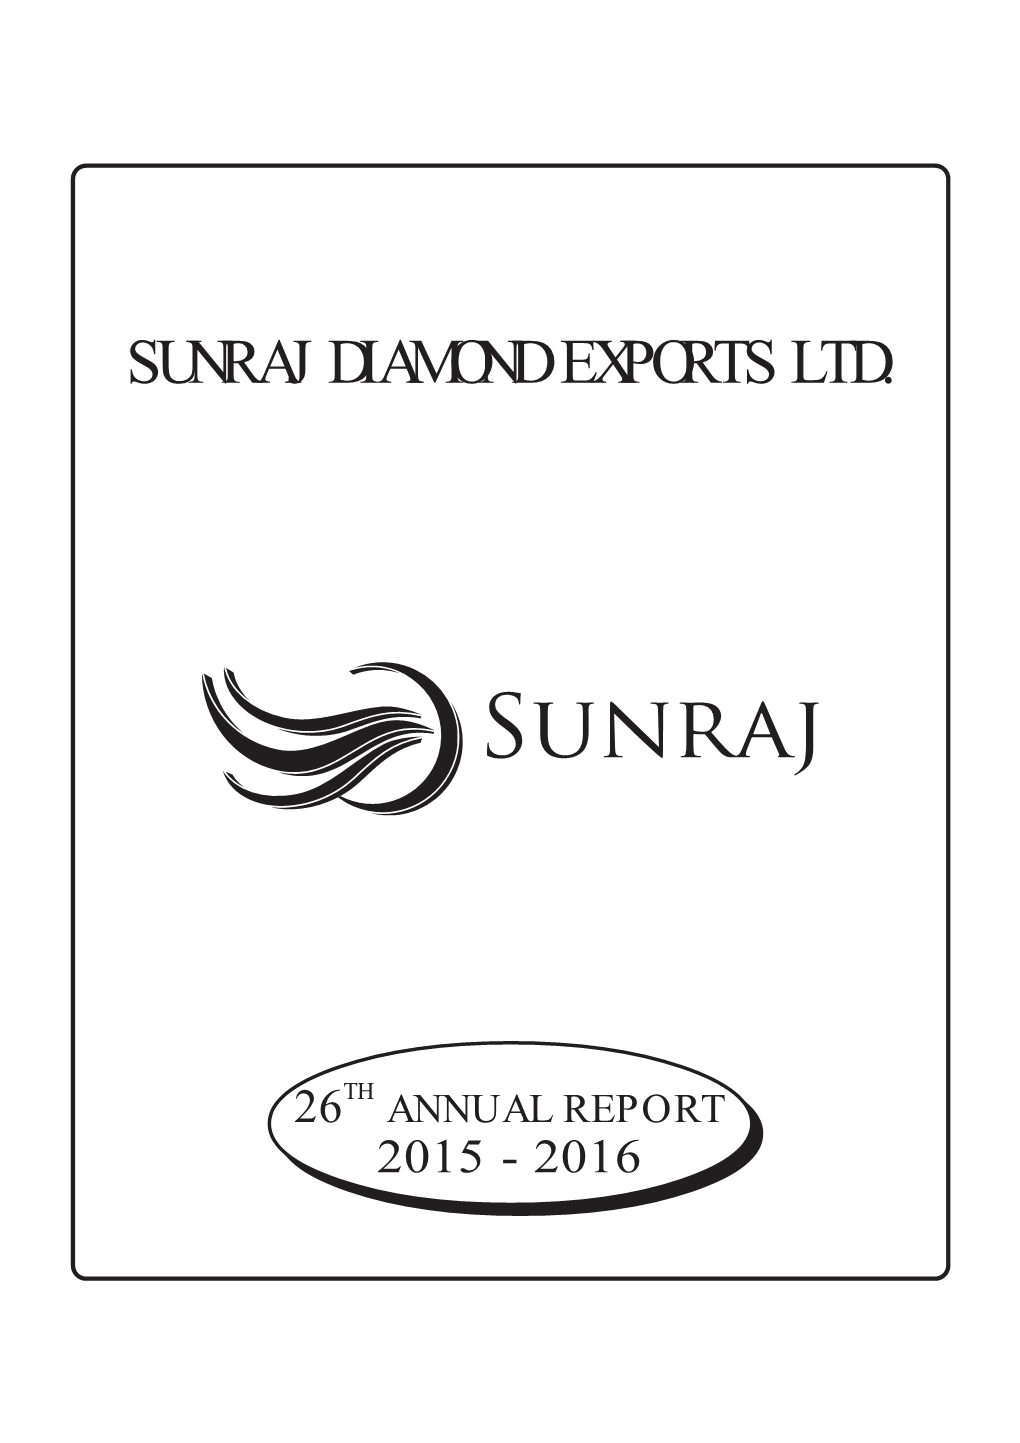 Sunraj Diamond Exports Ltd